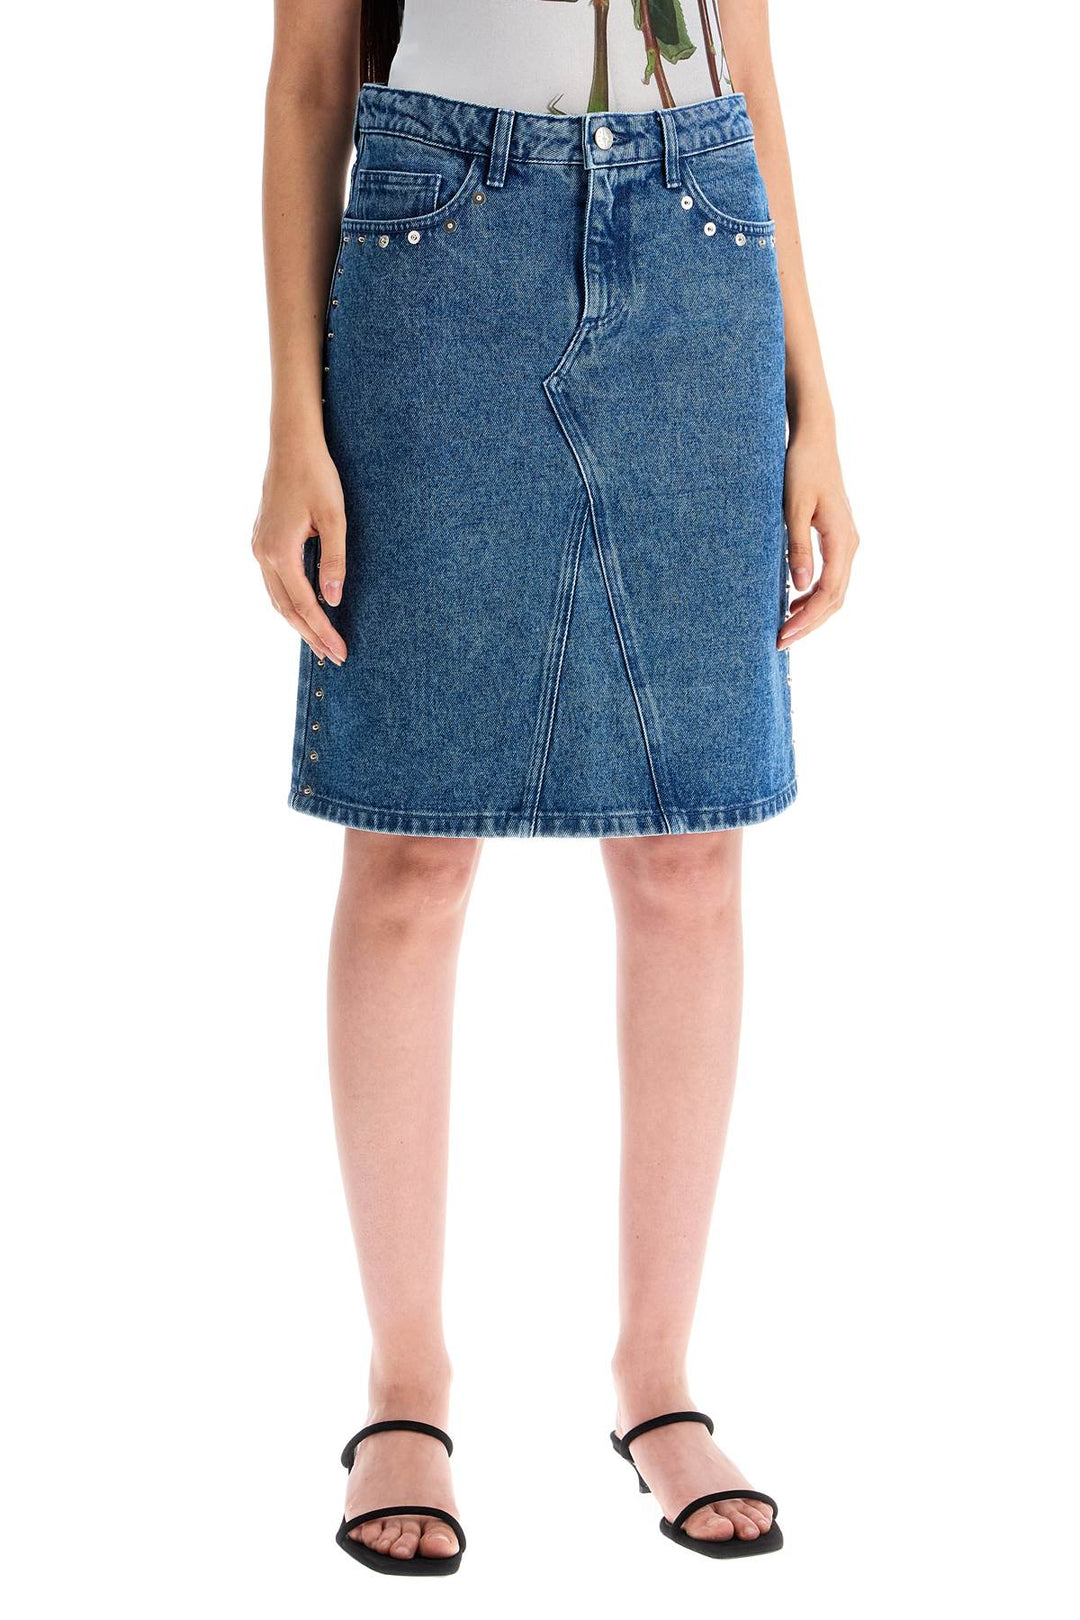 Paloma Wool Denim Studded Longuette Skirt Blue